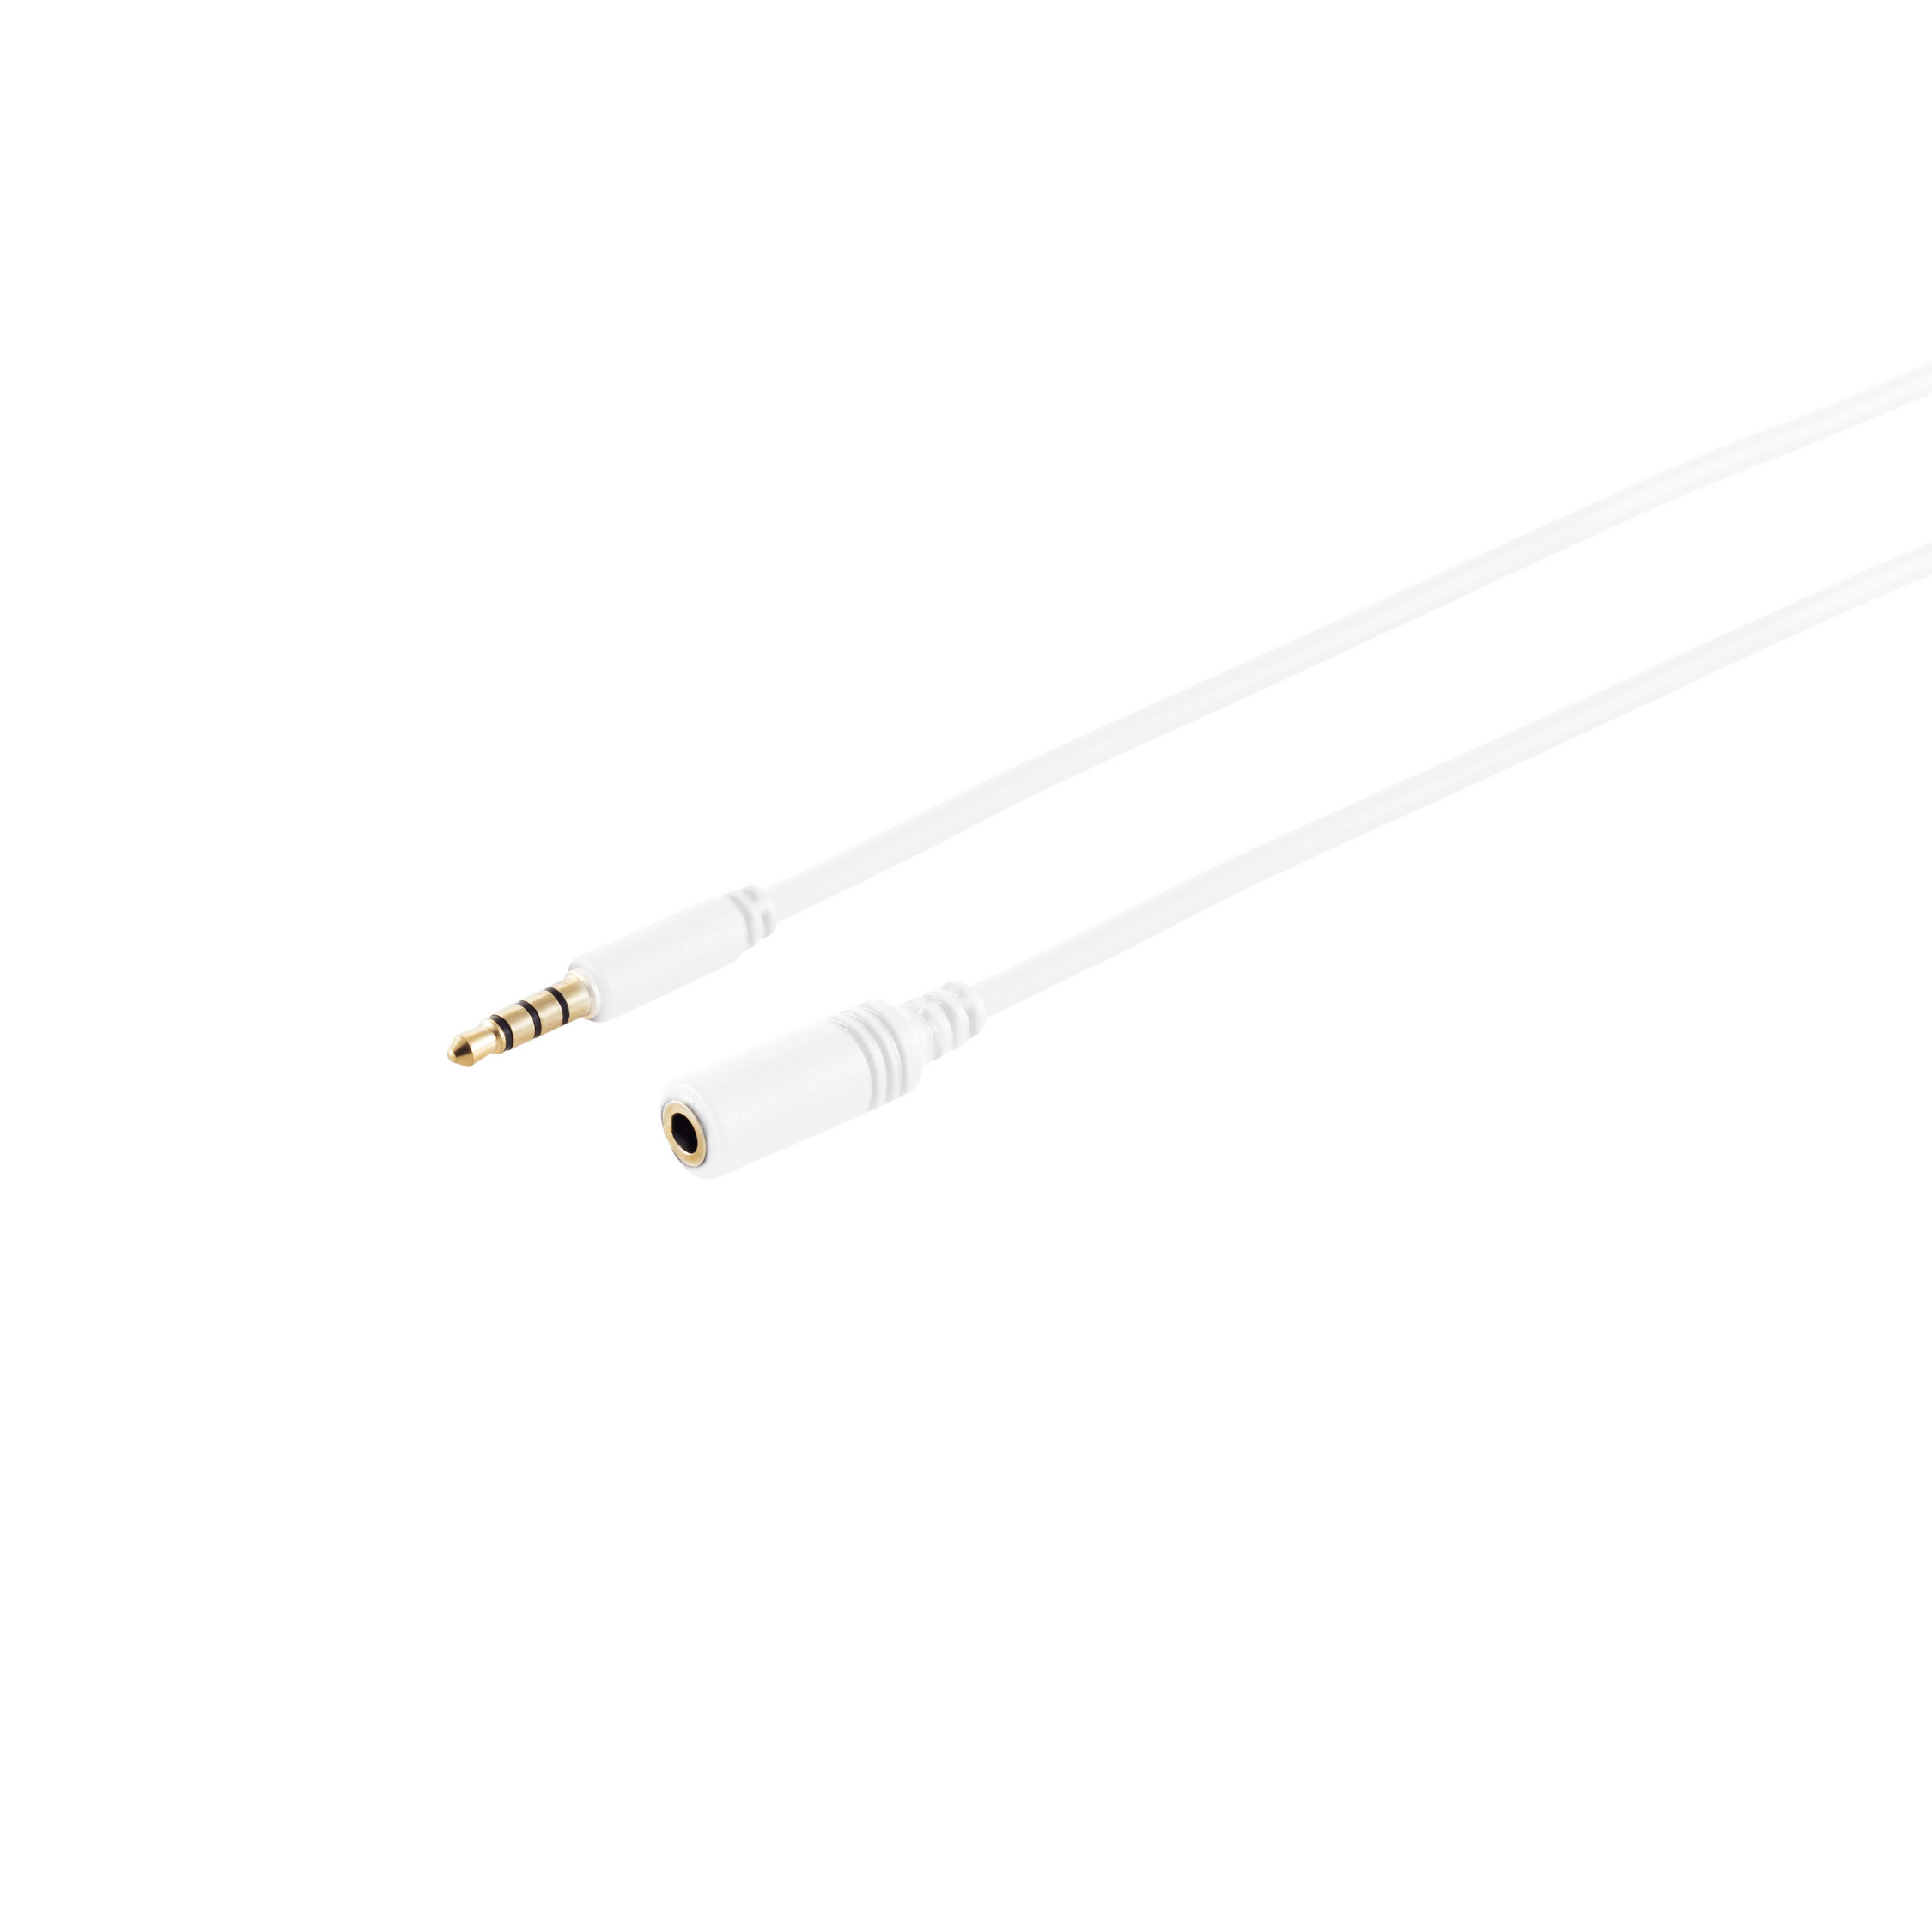 KABELBUDE 4-pol, 3,5mm m weiß, verg. 0,50 Klinkenverlängerung, Stecker/Buchse, 0,5m